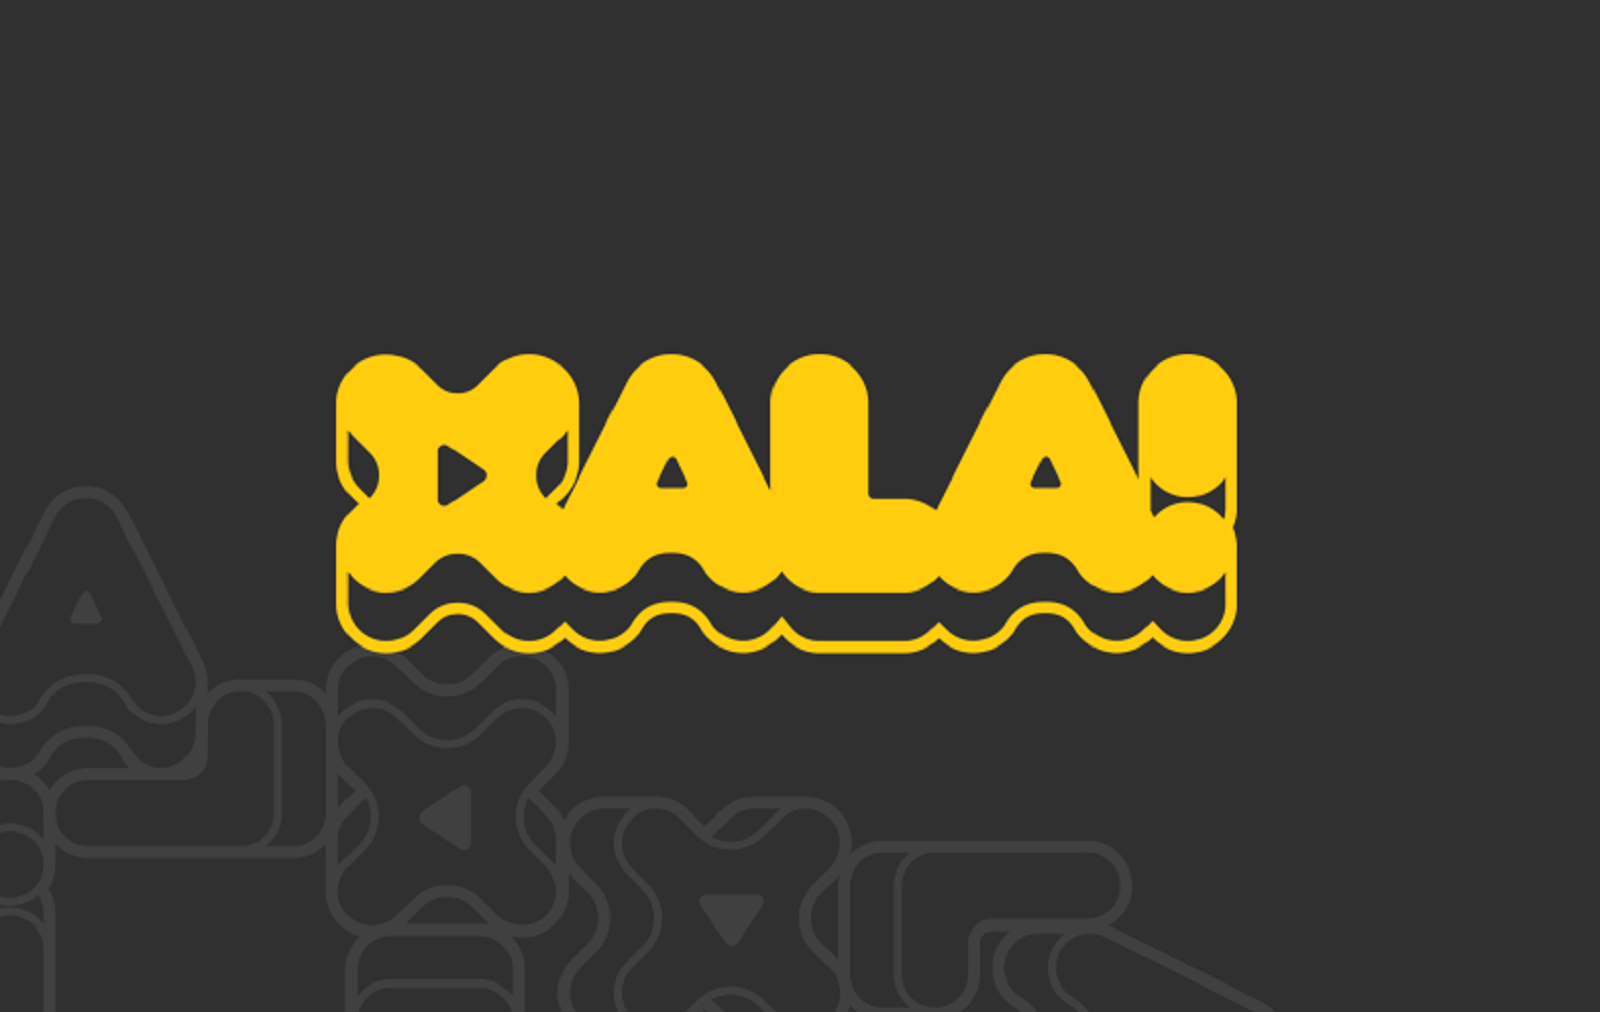 Disfruta al máximo con XALA!, el Netflix del deporte catalán